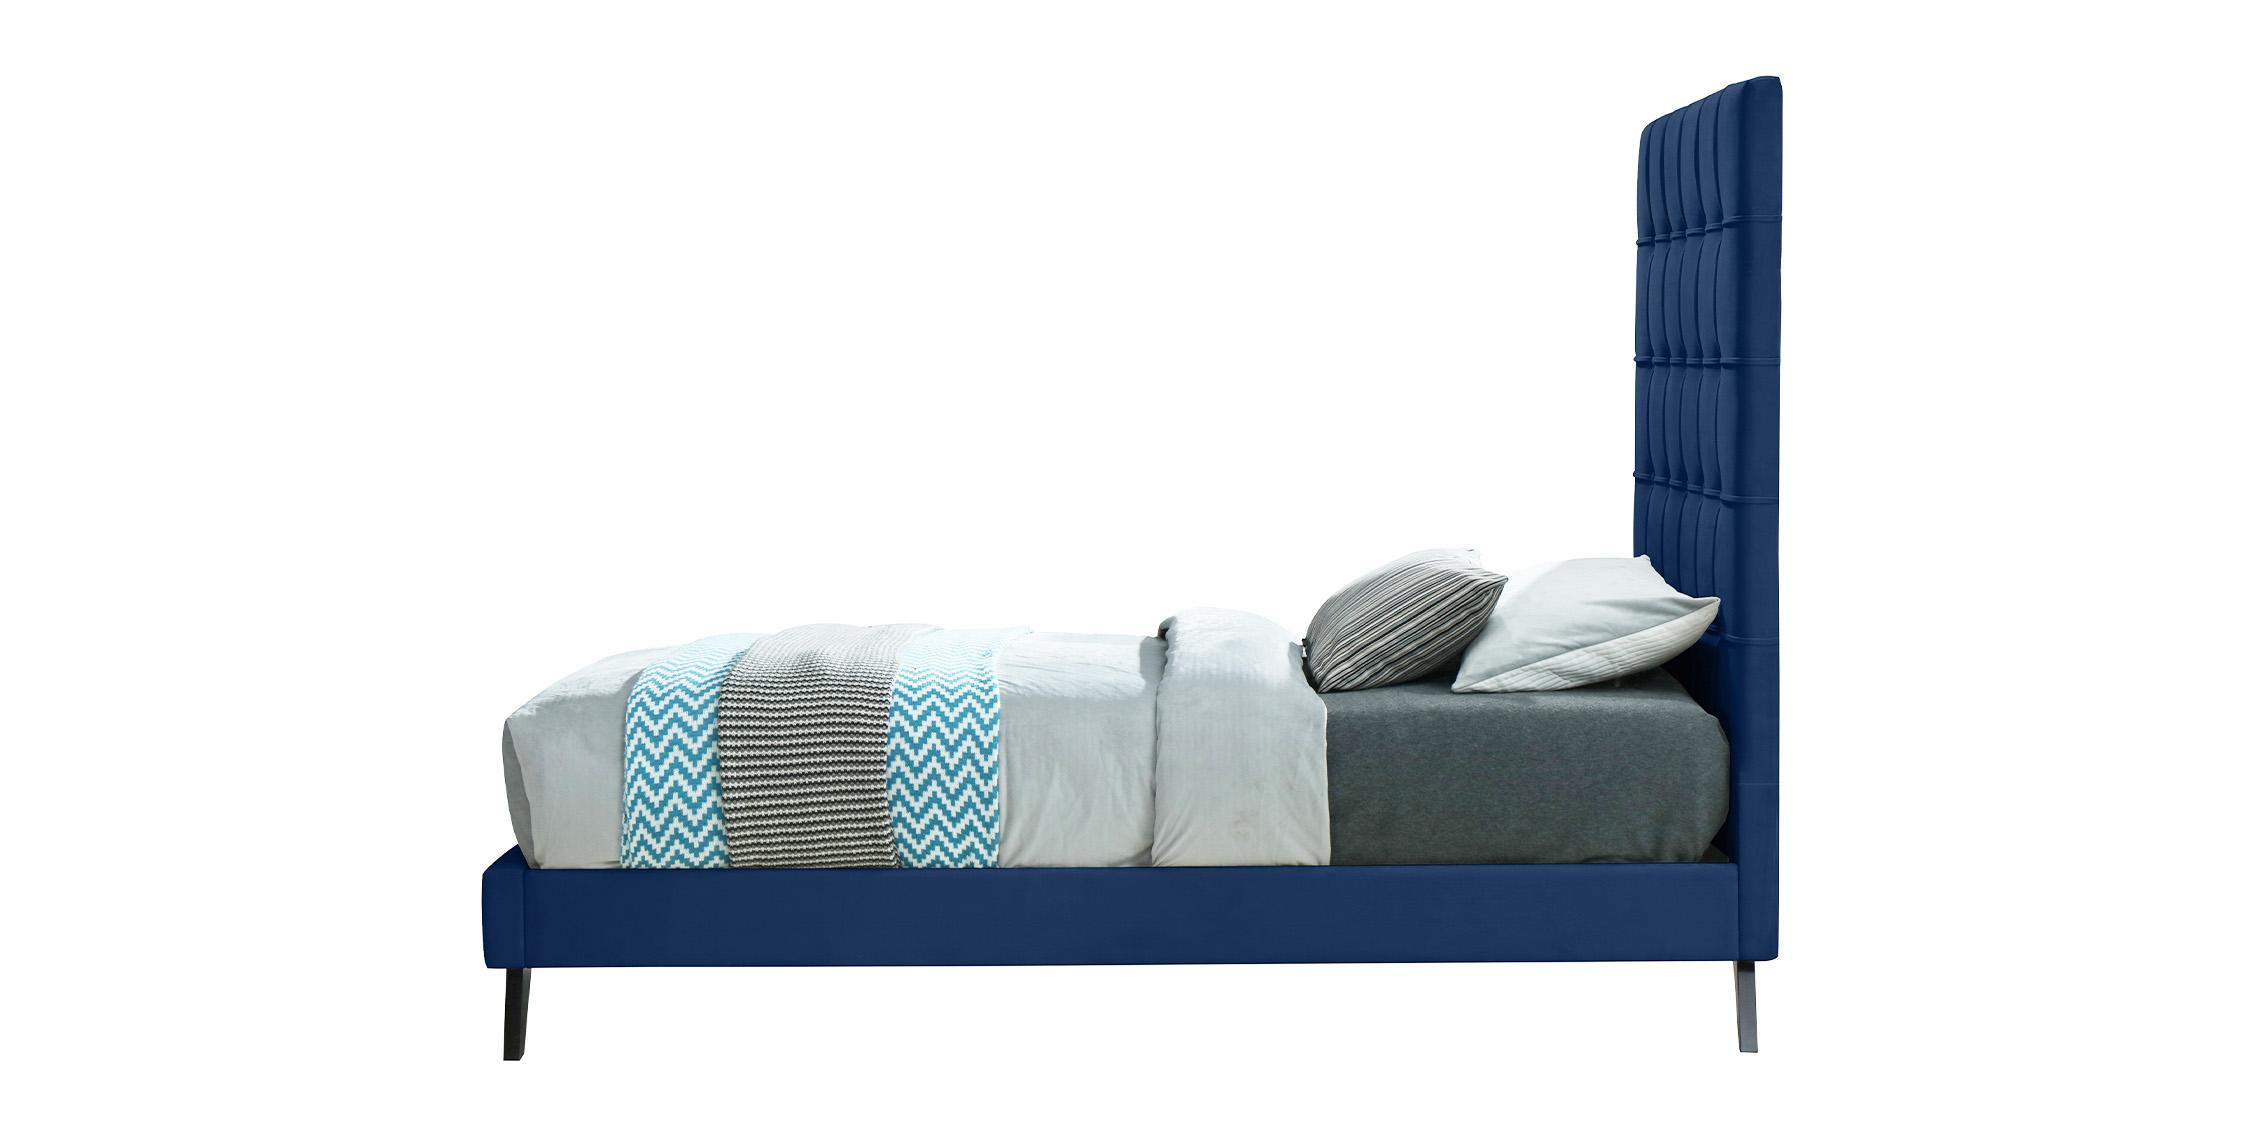 

    
EllyNavy-T Meridian Furniture Platform Bed
